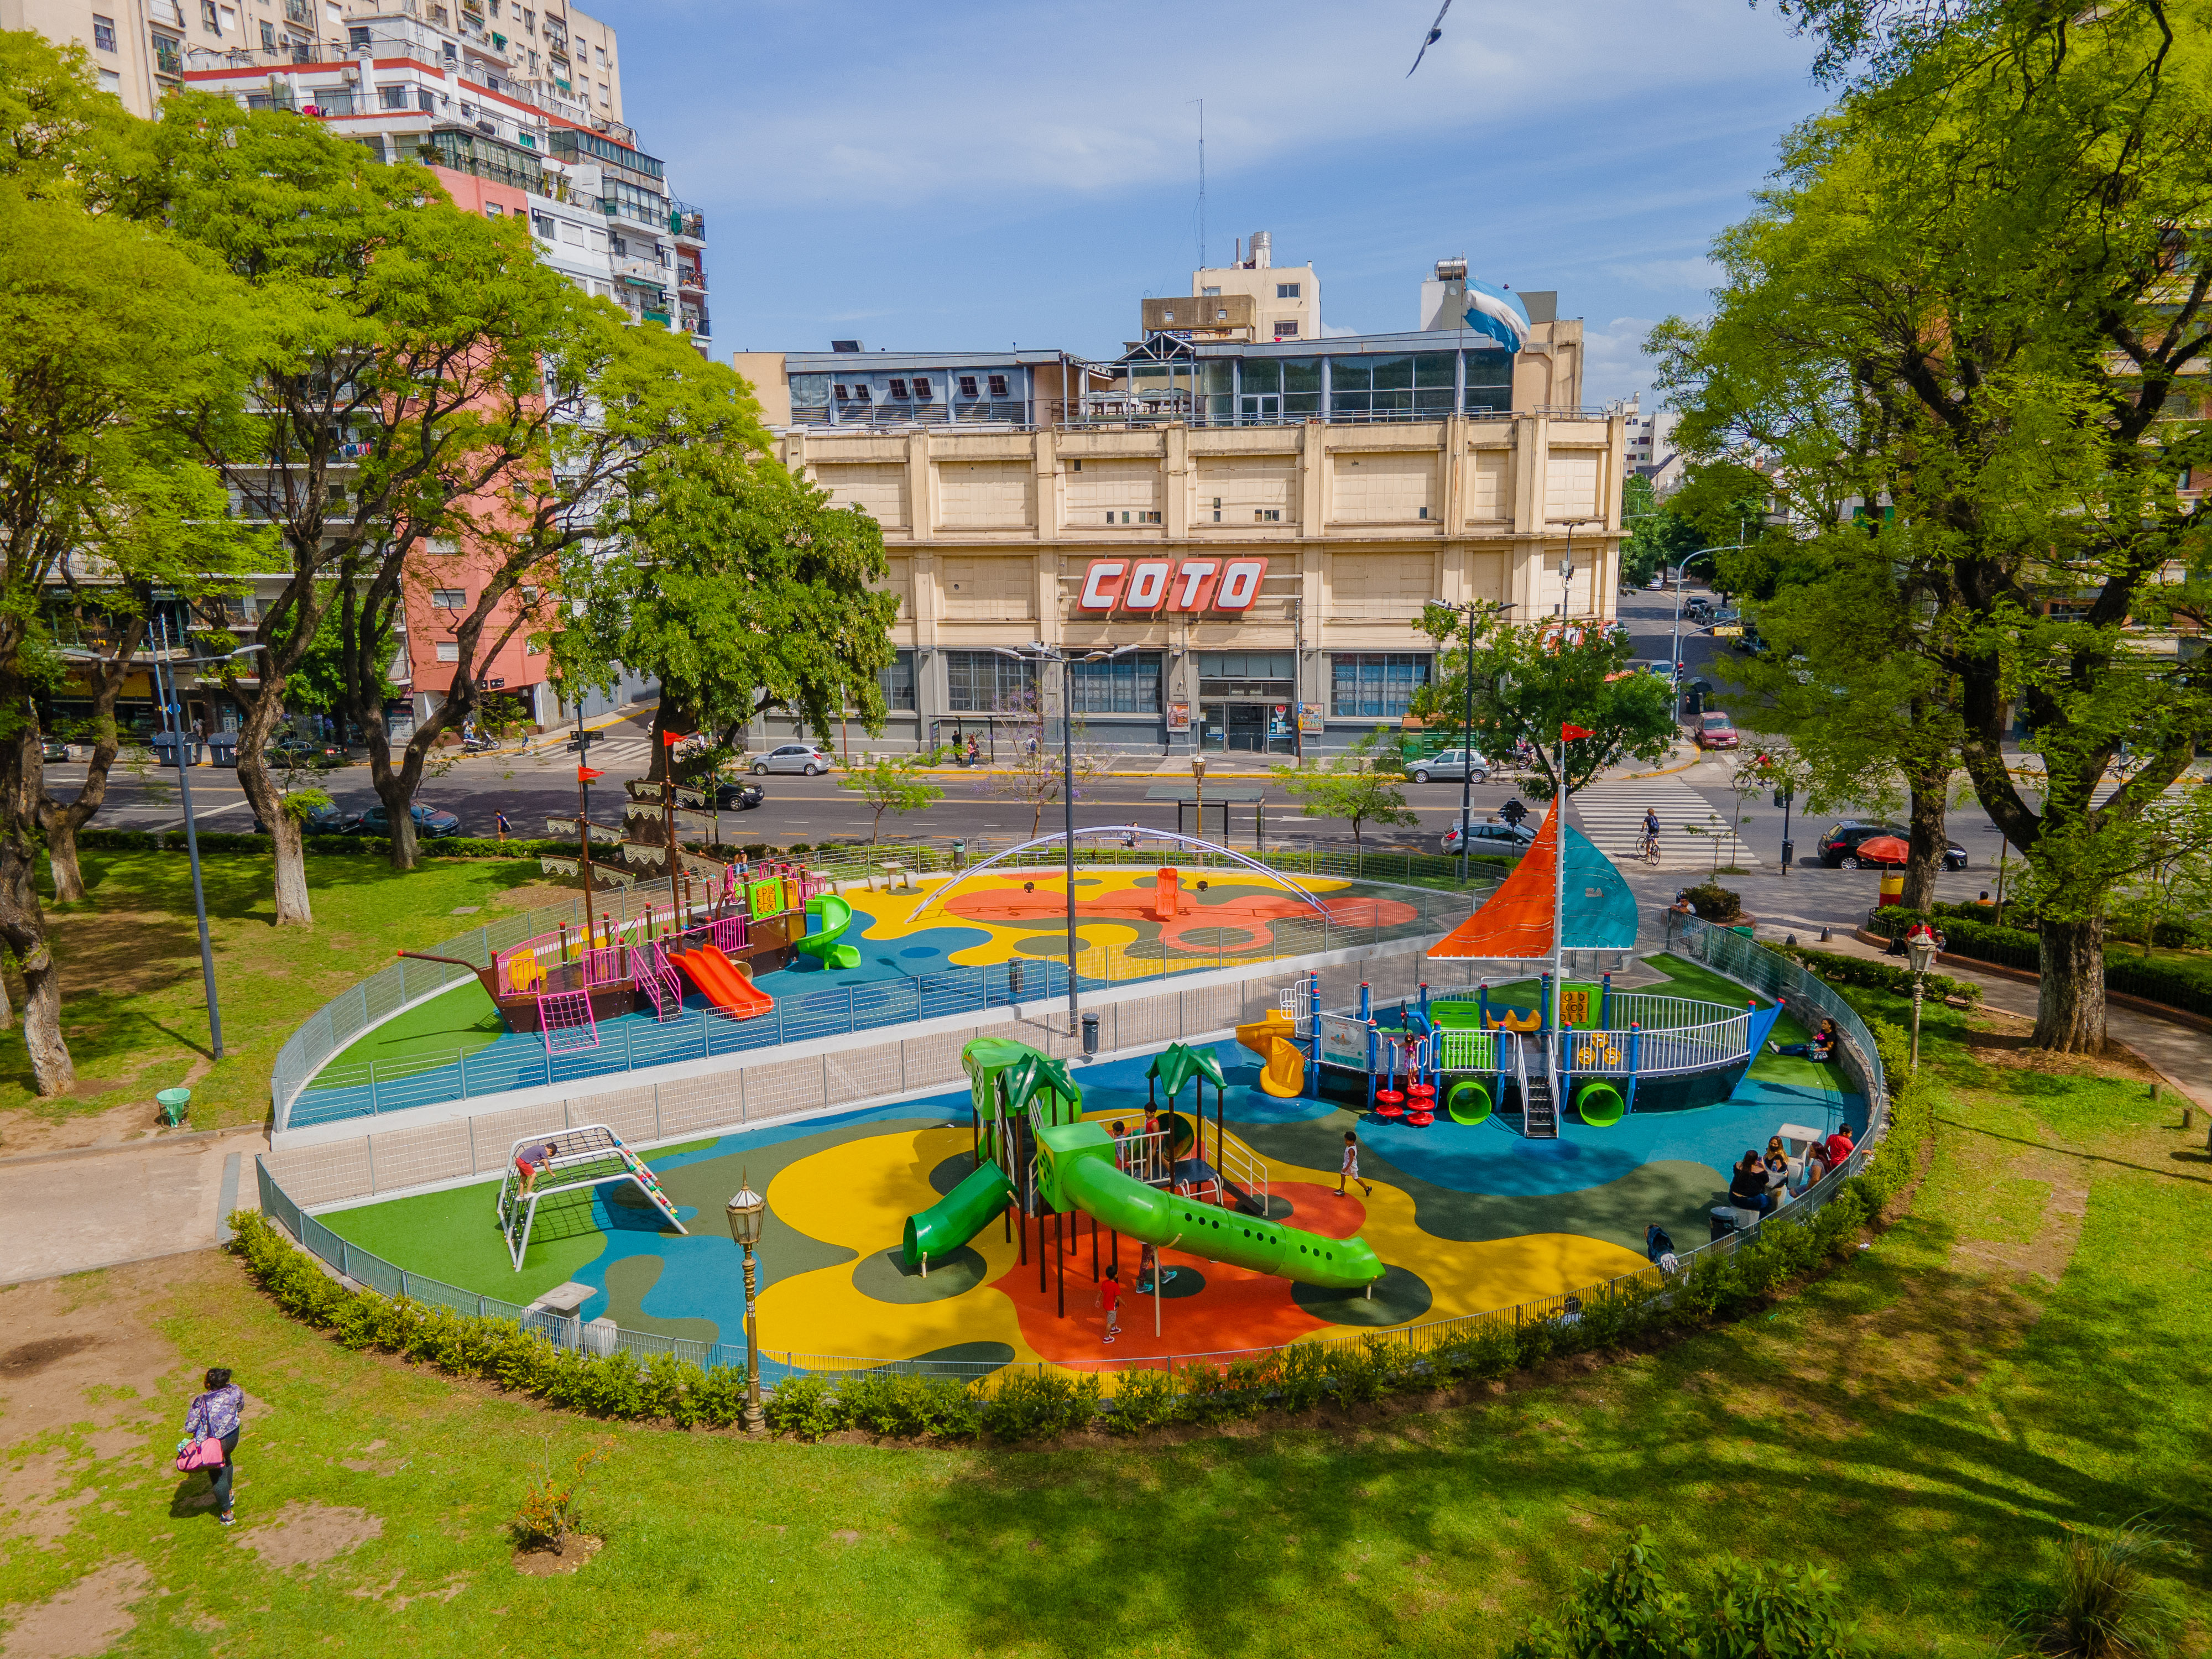 Juegos infantiles en espacios públicos como modo de integración